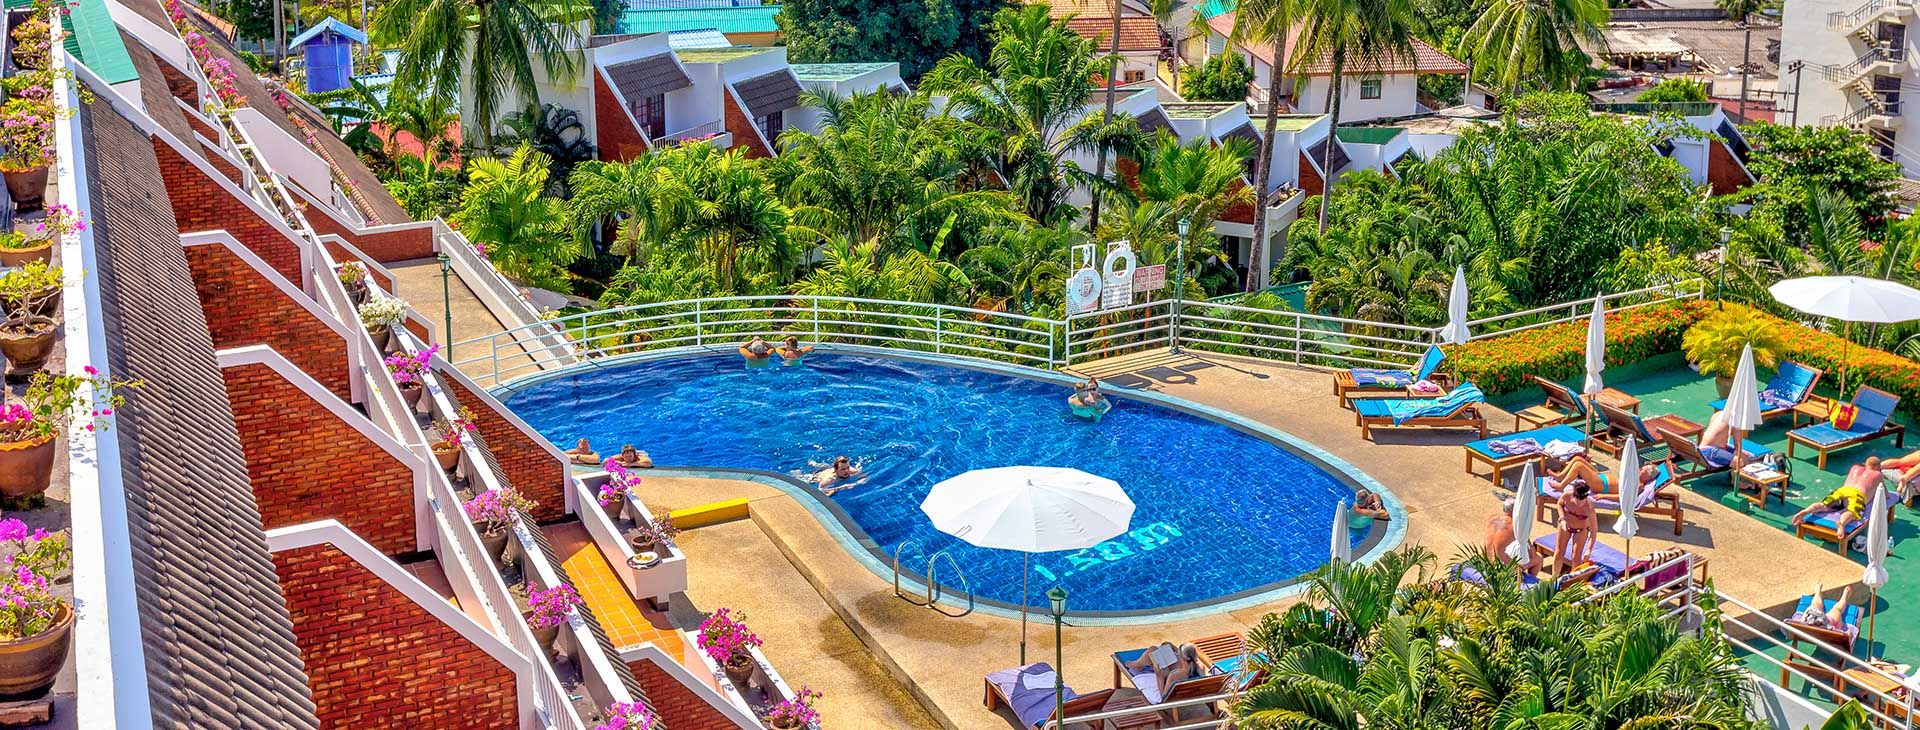 Best Western Phuket Ocean Resort - egzotyczna Tajlandia  - Zdjęcie 1